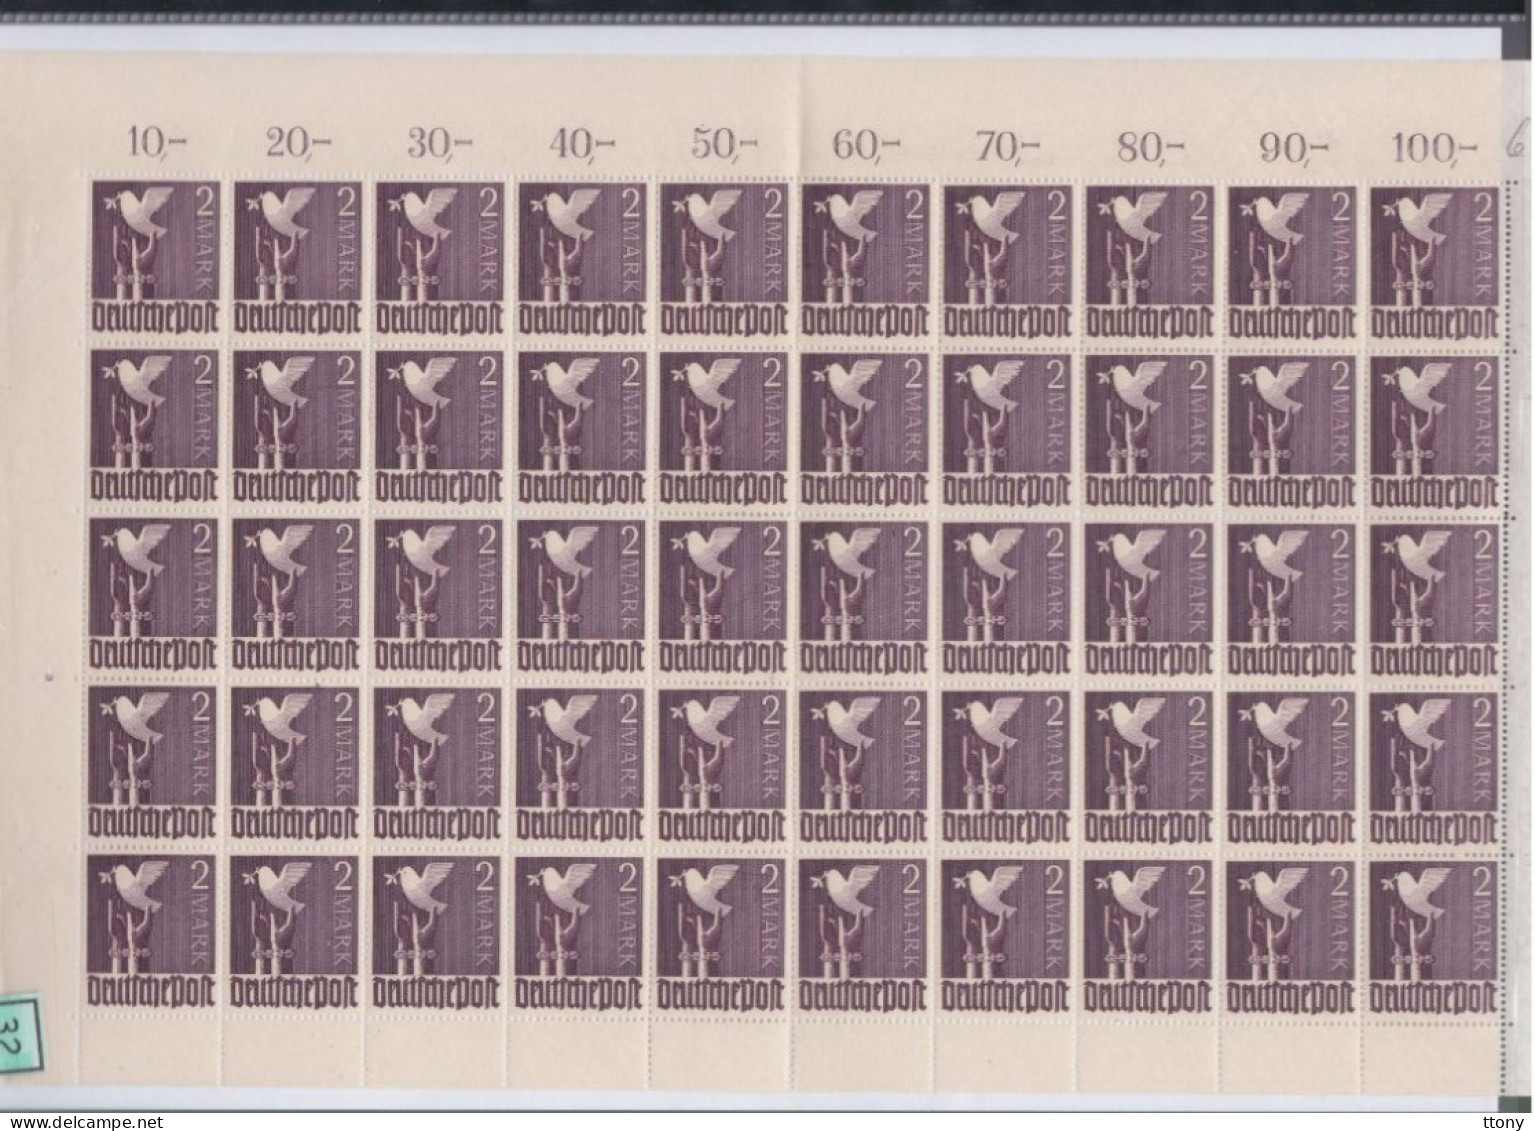 Une Feuille Entière  50 Timbres   2 Mark **   Allemagne  Occupation Alliée  Zone Interalliée AAS  Deutsche Post  960 - Postfris